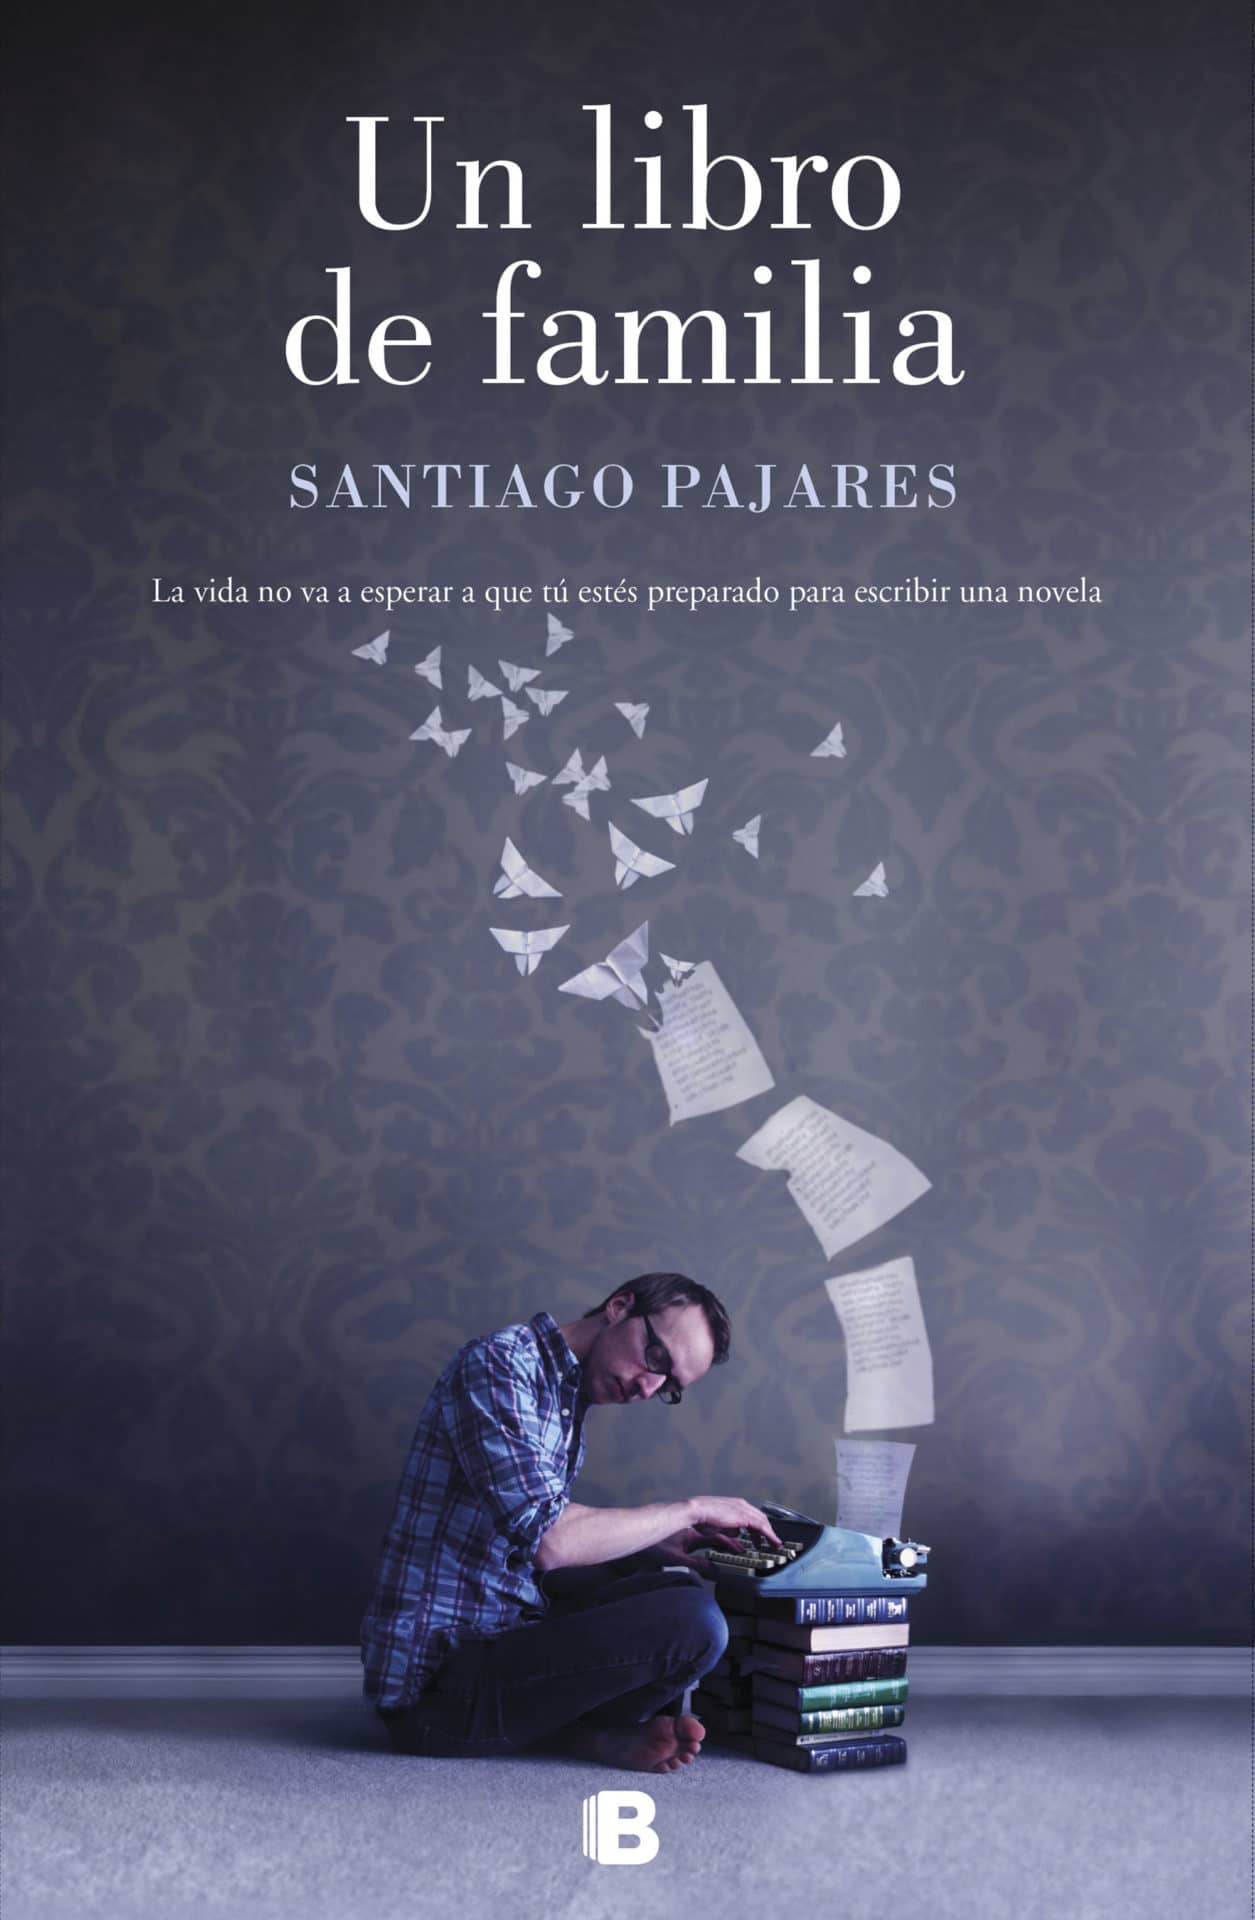 Un libro de familia, de Santiago Pajares - Libros y Literatura